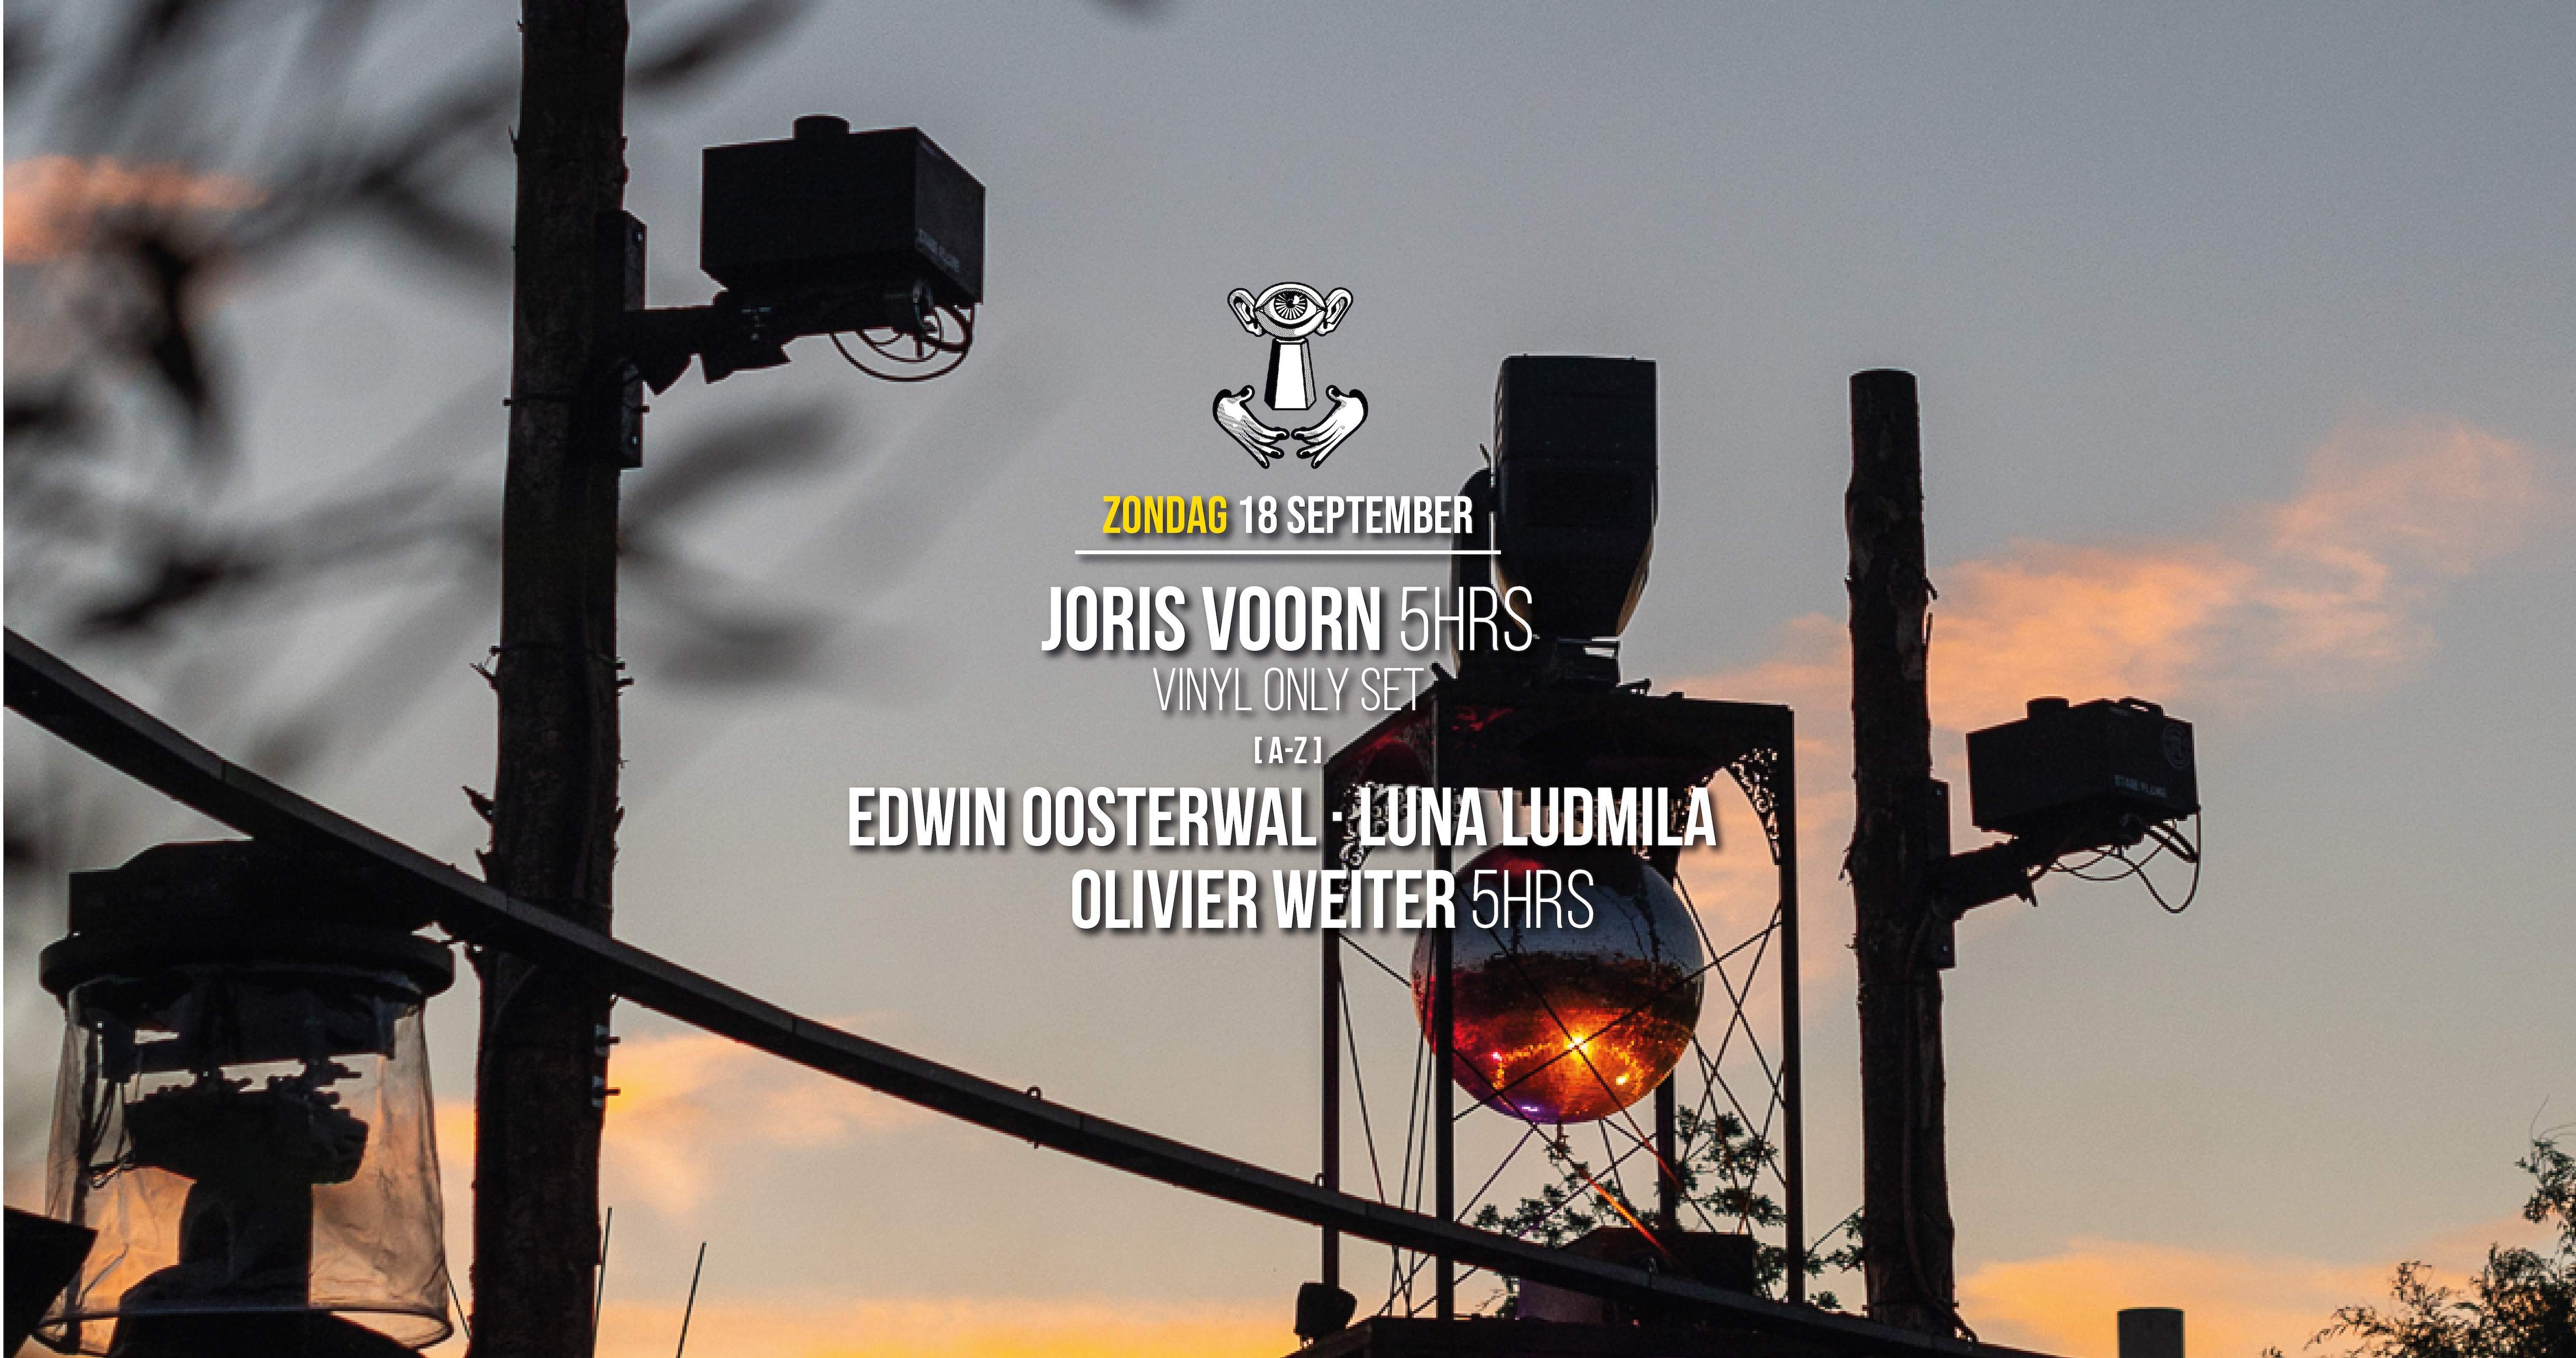 Thuishaven with Joris Voorn 5hrs (Vinyl only) - フライヤー表